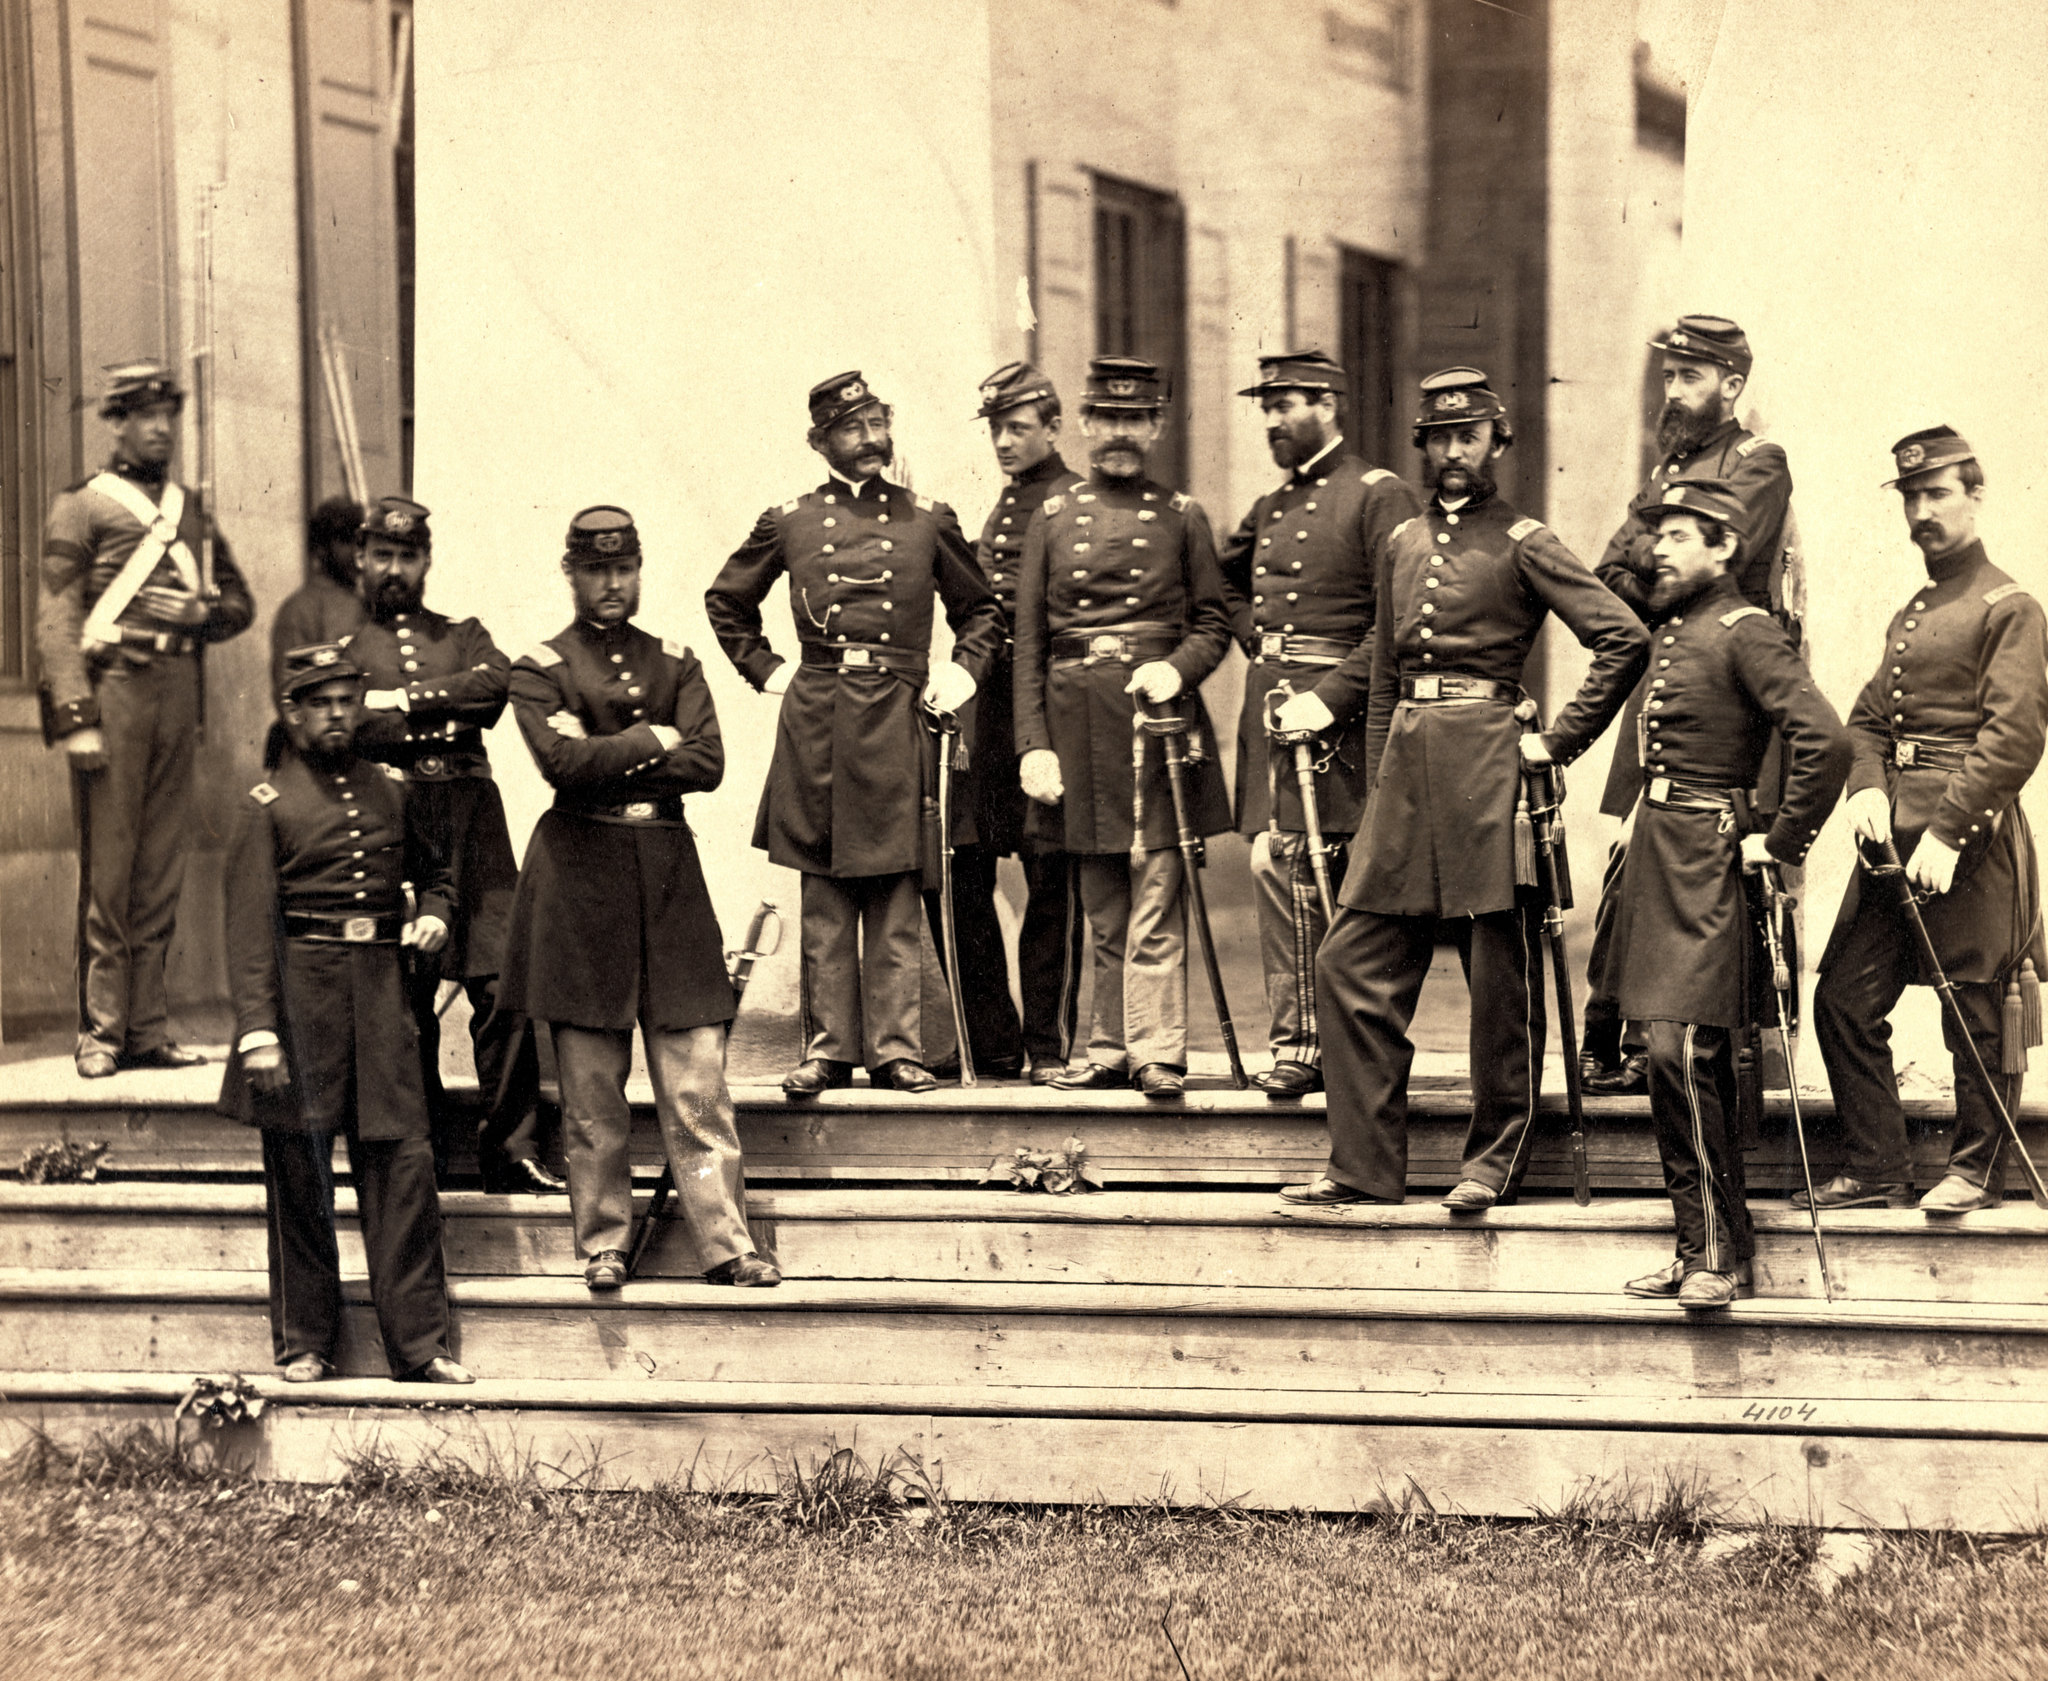 Officers of 8th New York State Militia, Arlington, Va., June, 1861